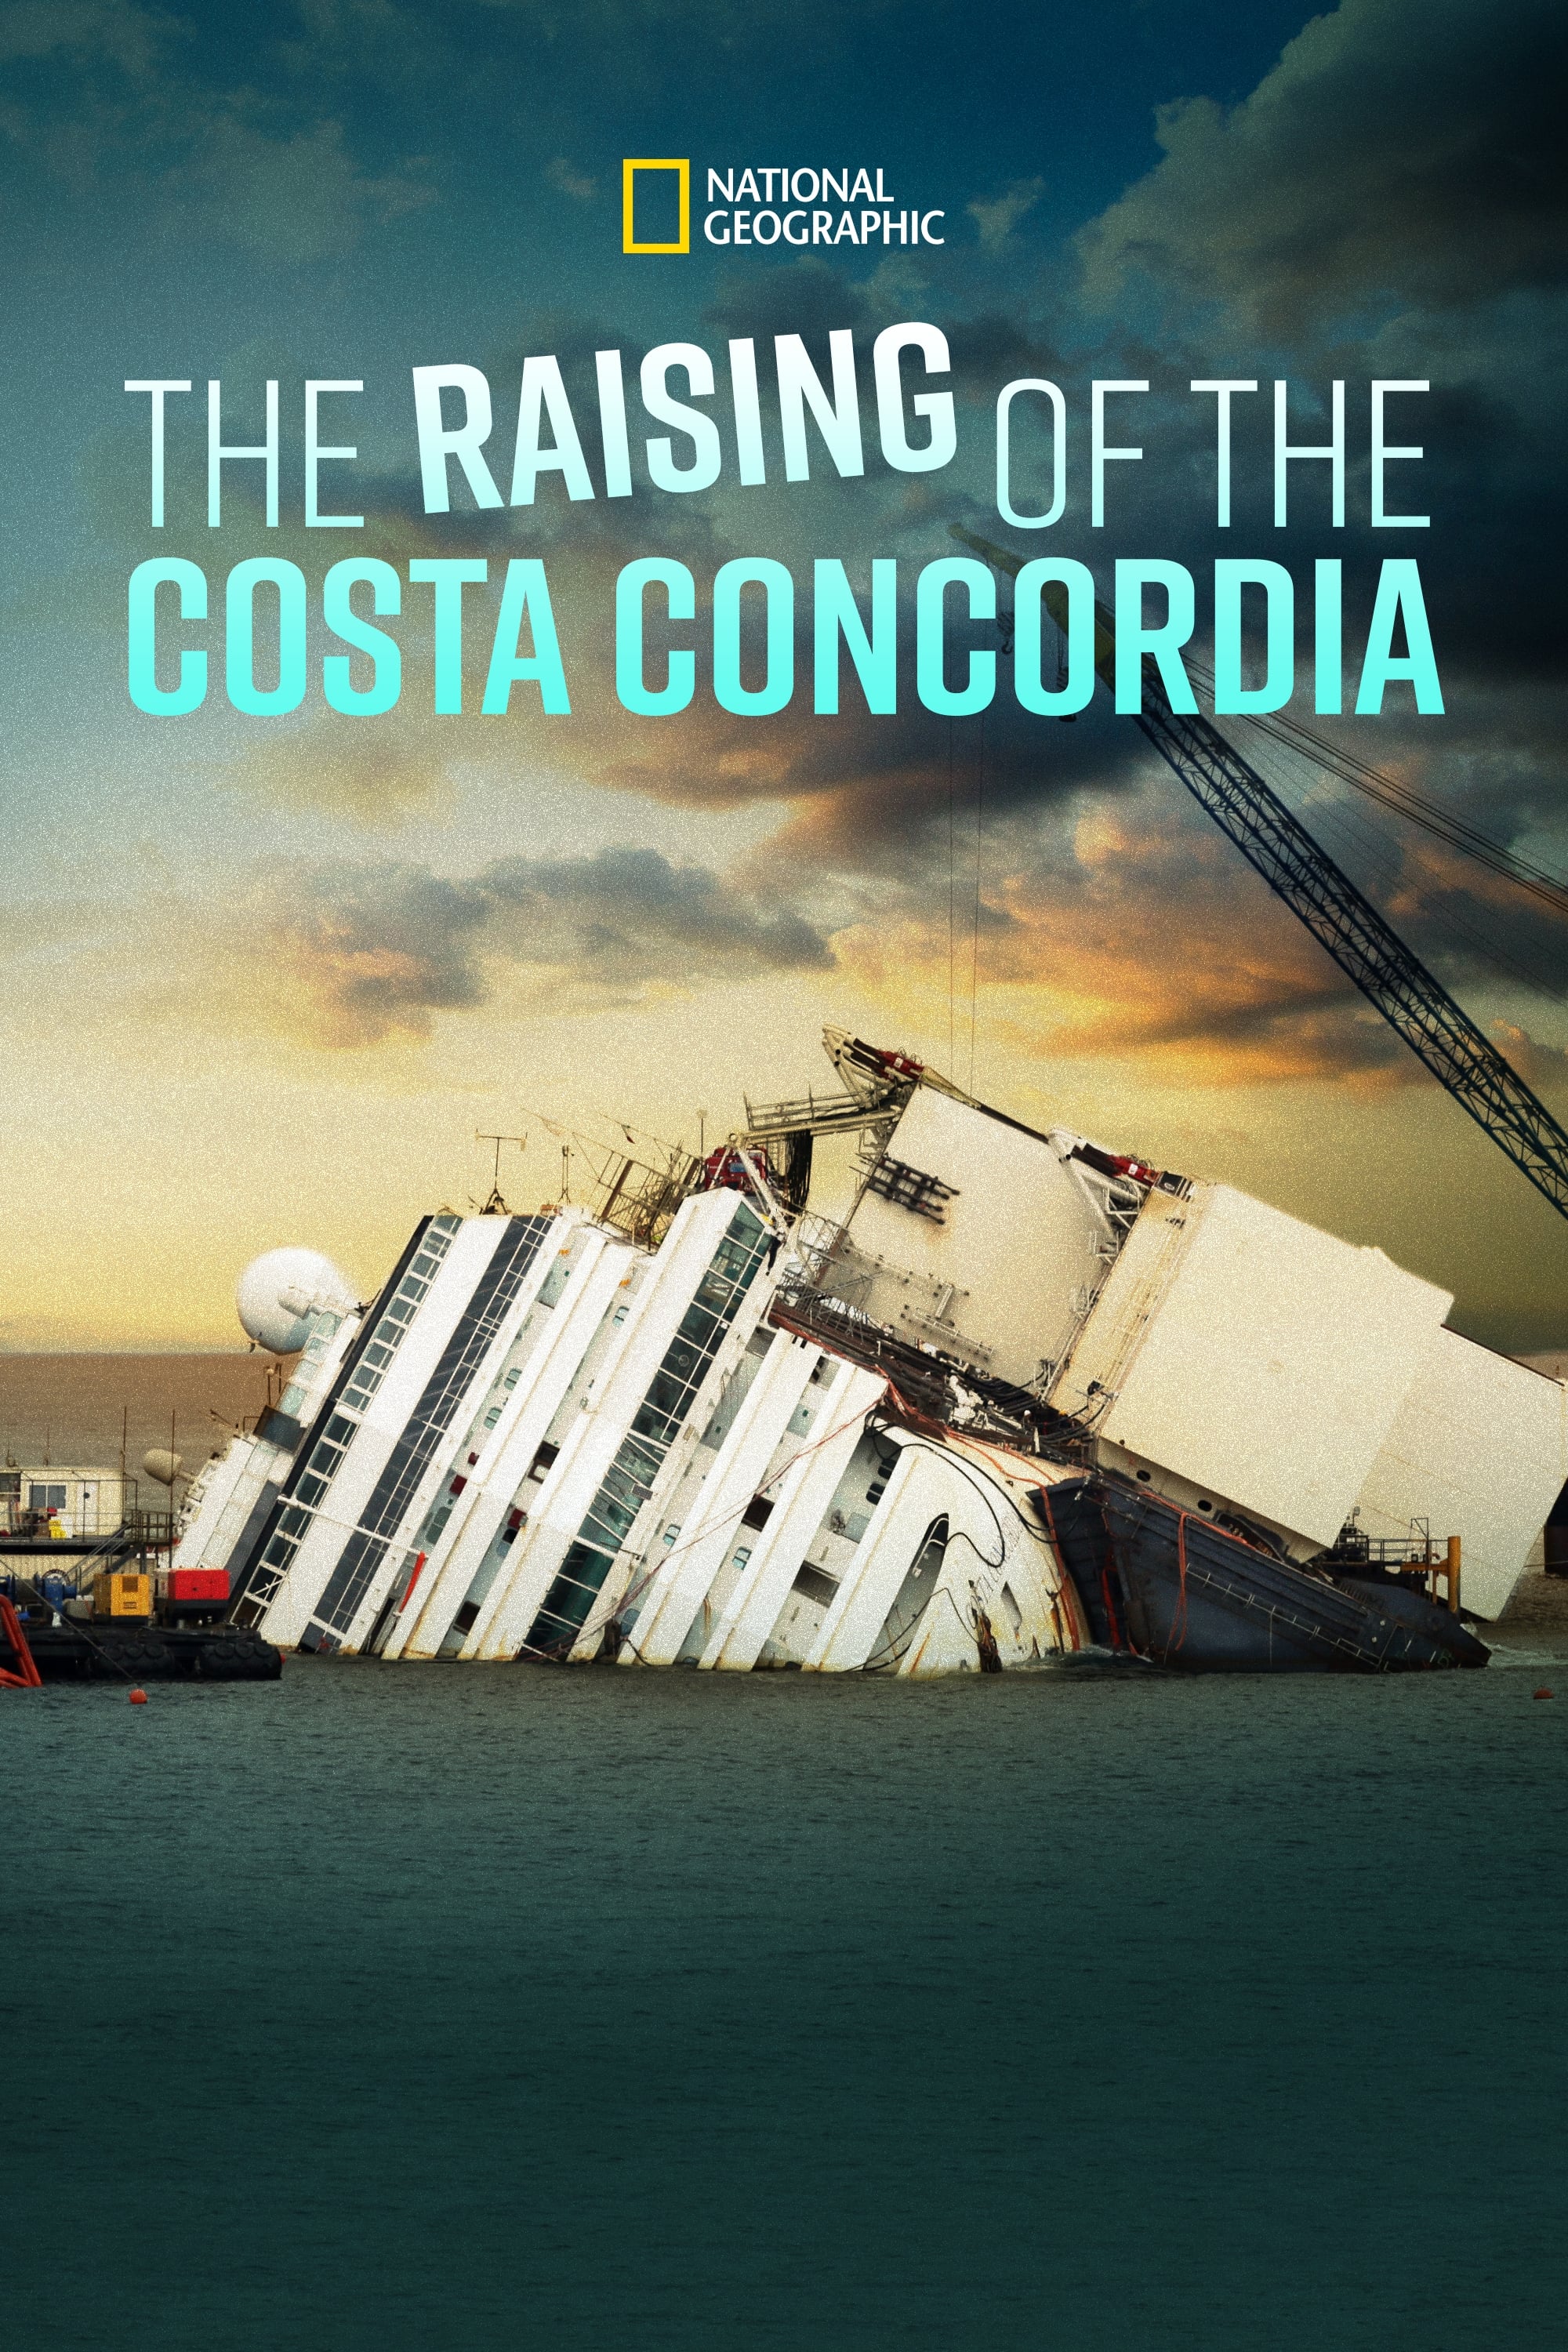 Caratula de The Raising of the Costa Concordia (Reflotar el Costa Concordia) 